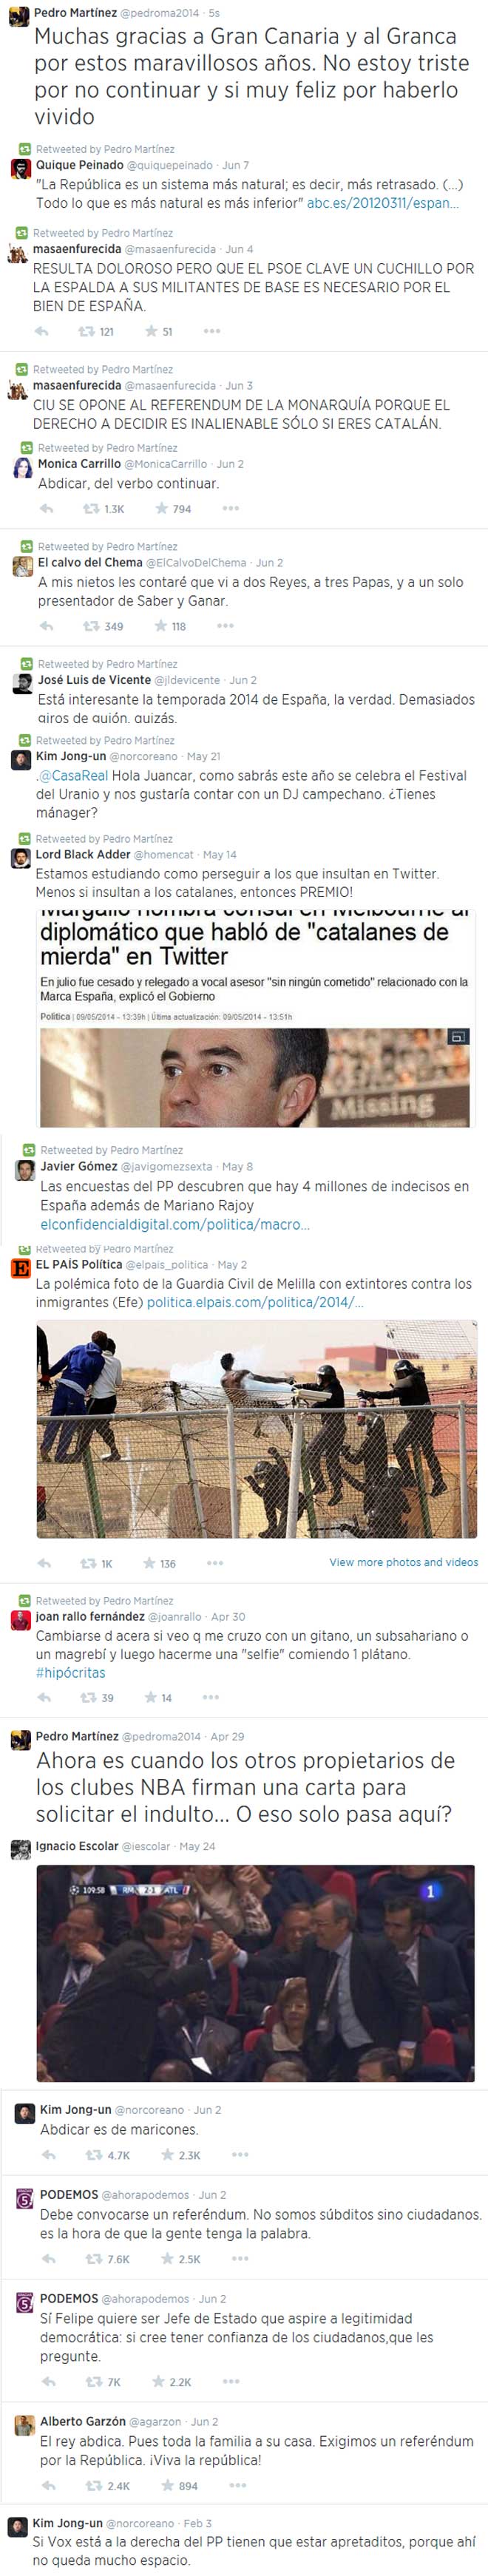 No sigue Pedro Martnez en el Granca por sus 'tweets' y posicionamiento poltico?